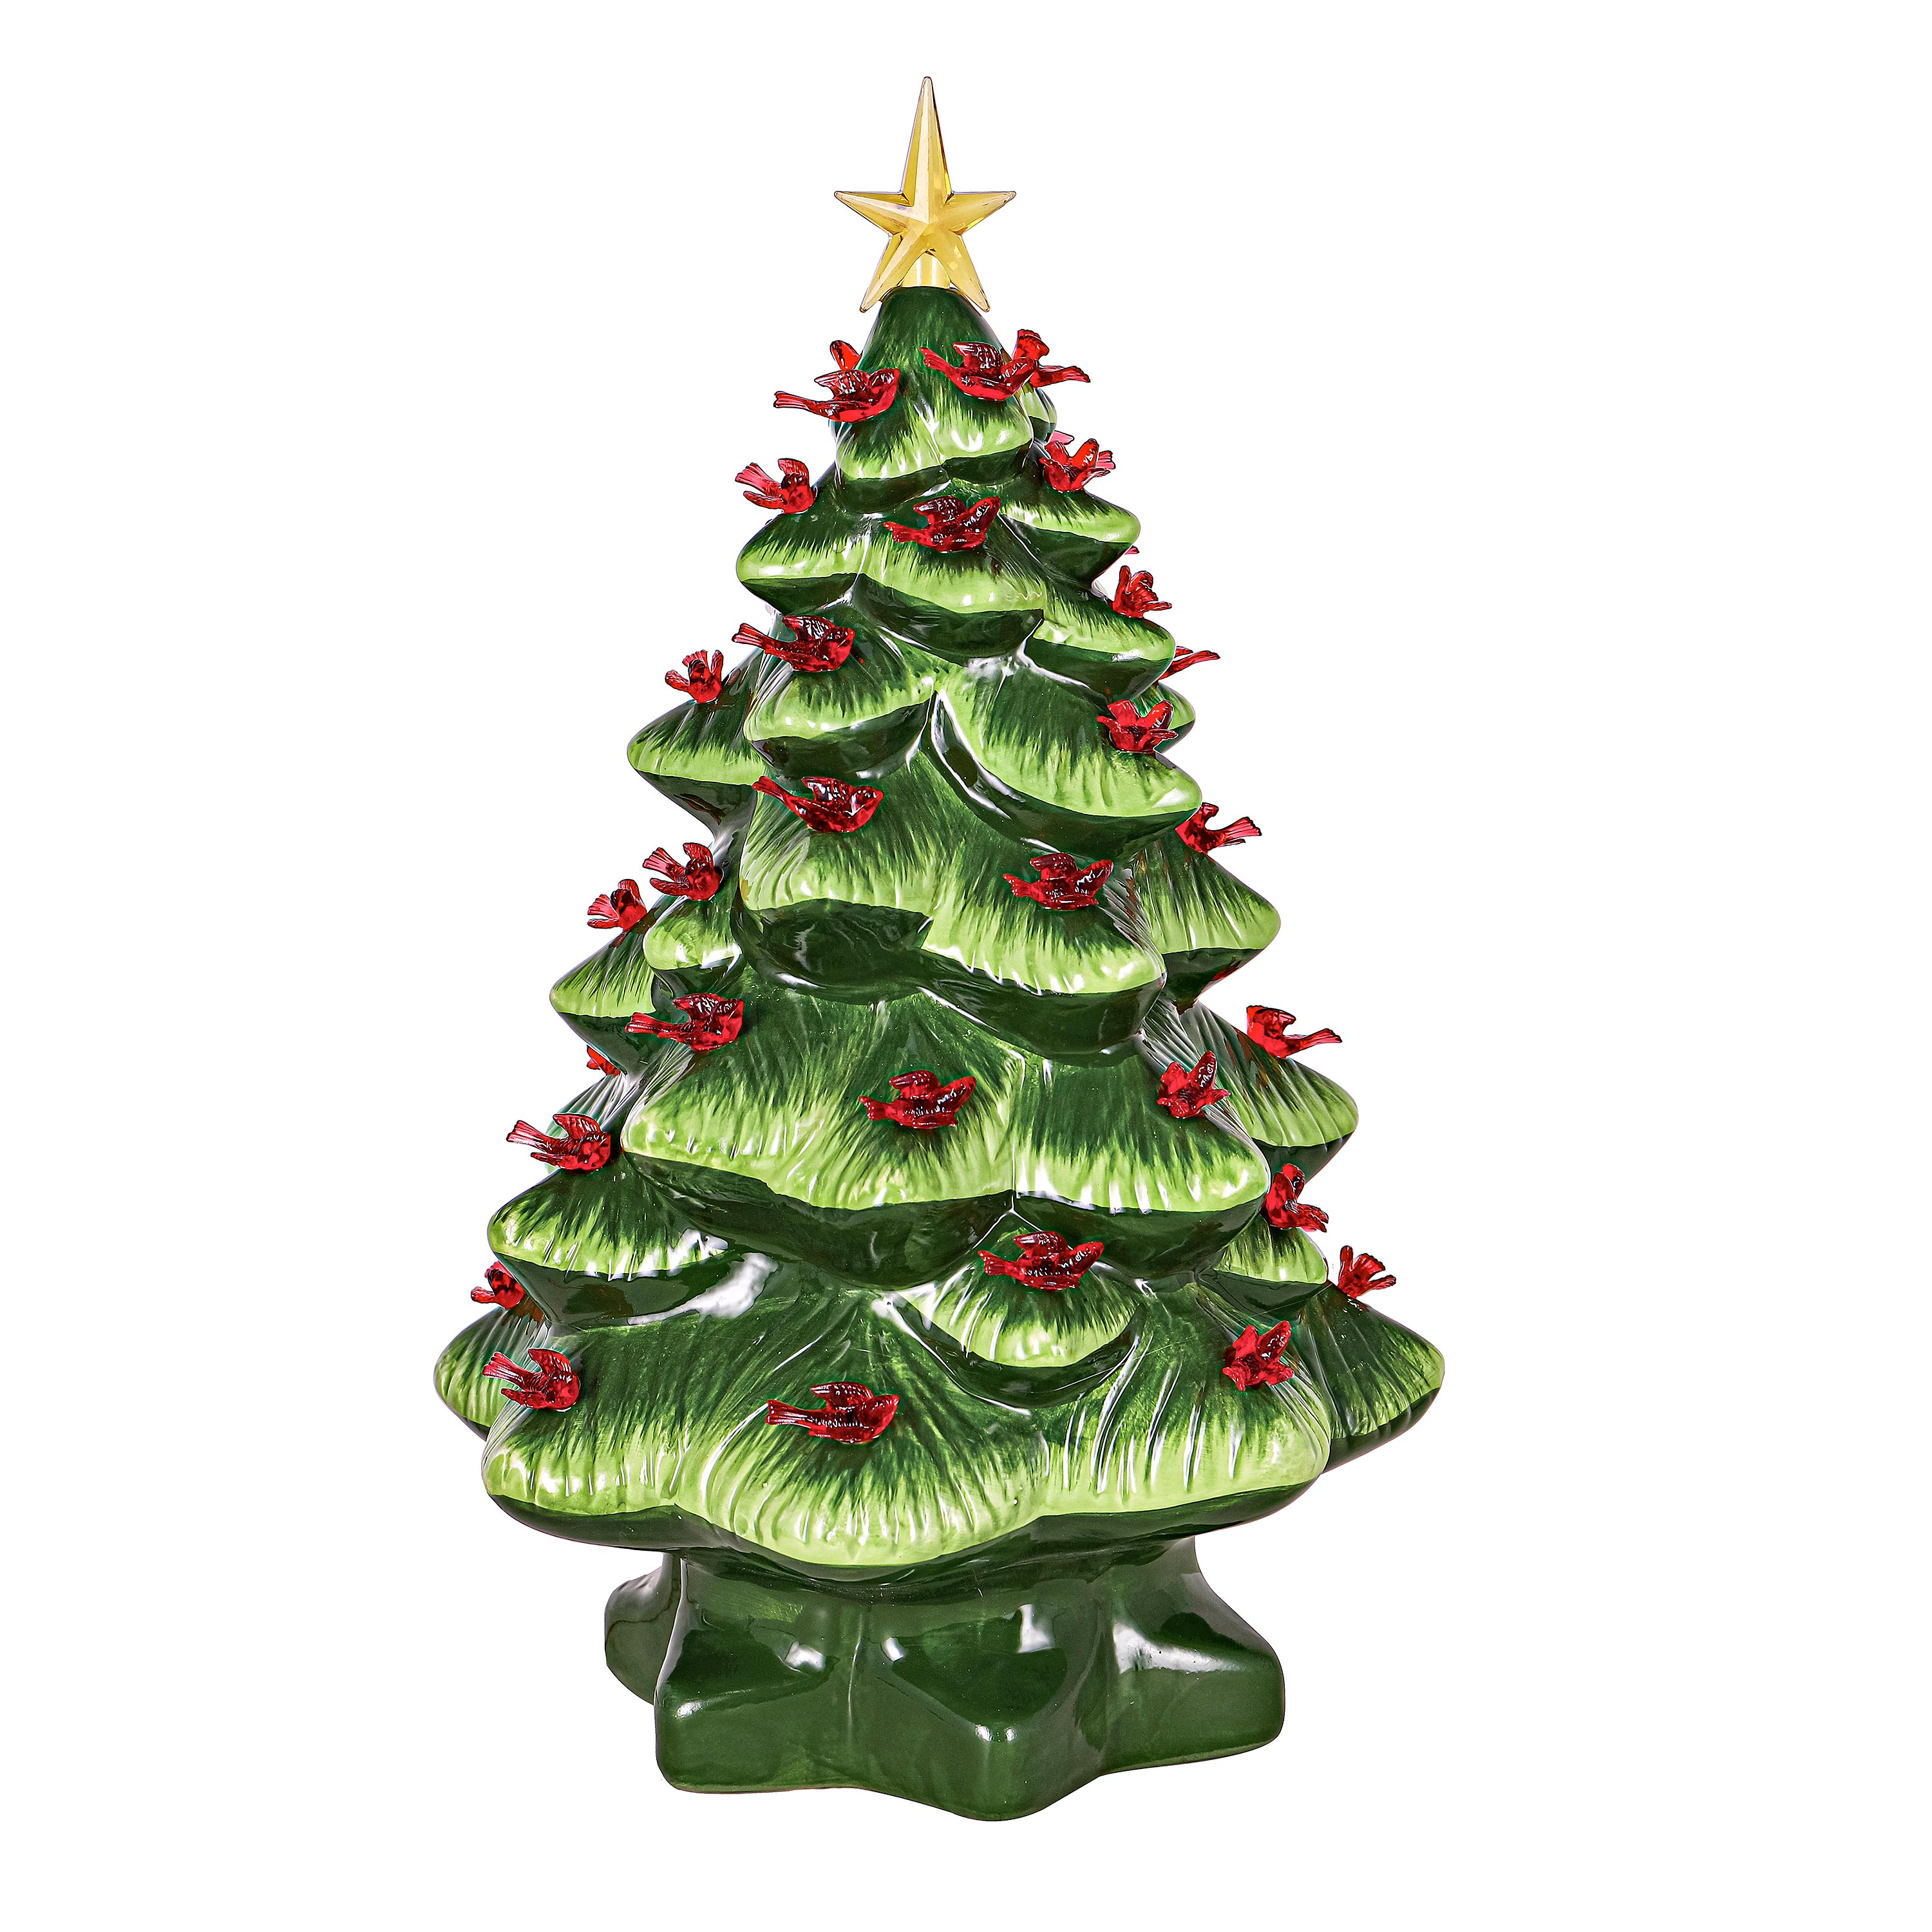 THE VINTAGE CERAMIC CHRISTMAS TREE